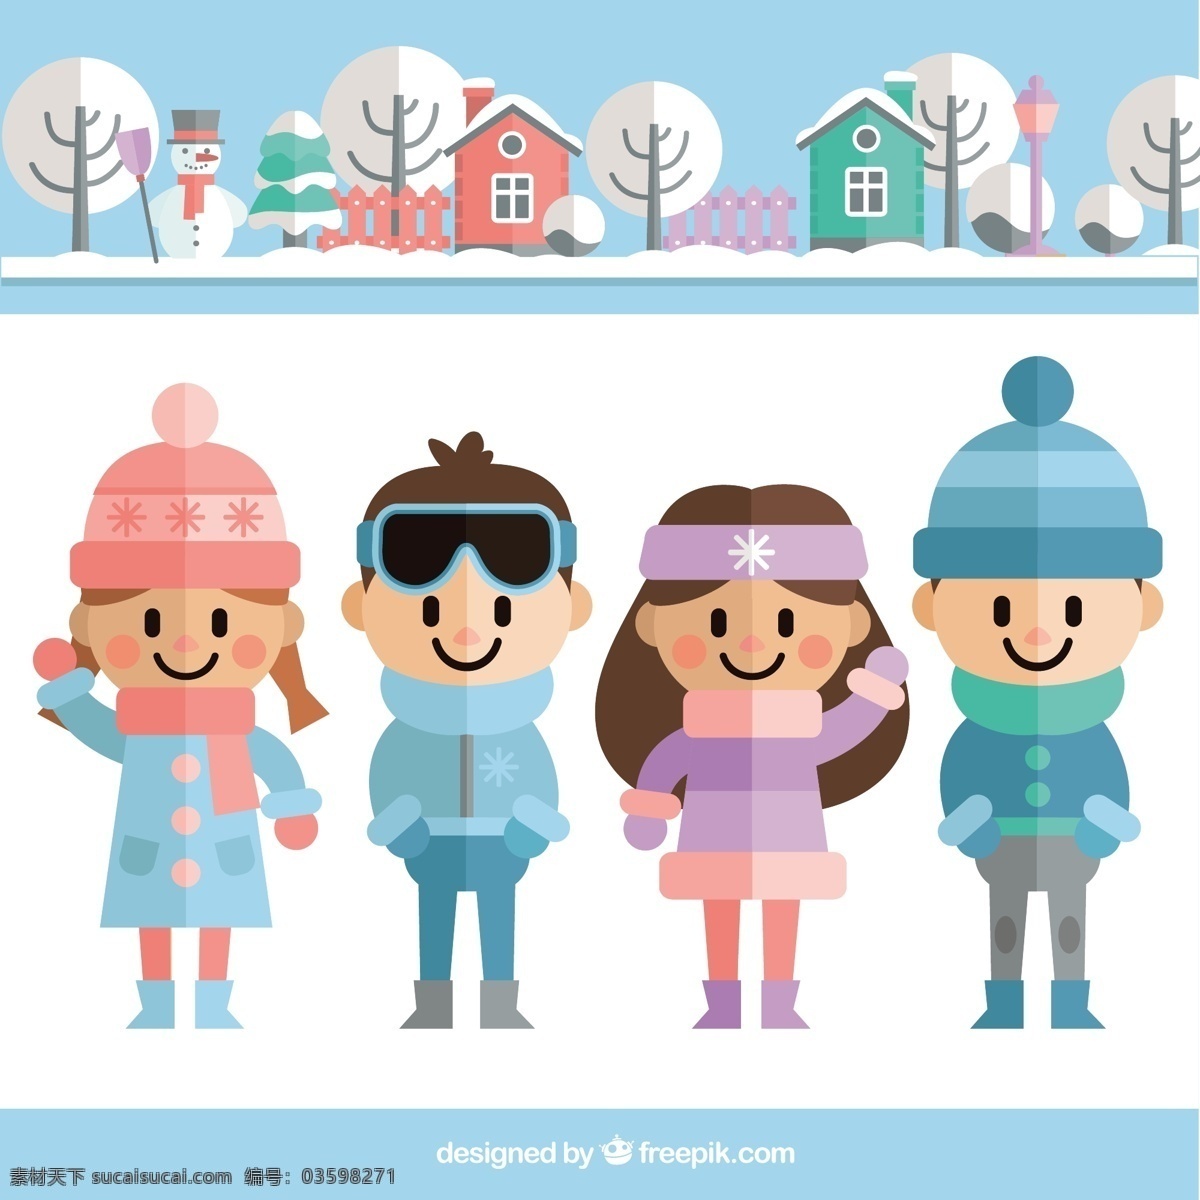 白雪皑皑 大地 上 过冬 孩子 冬季 雪地 儿童 景观 可爱 服装 平面 平面设计 十二月 寒冷 季节 漂亮 下雪 季节性